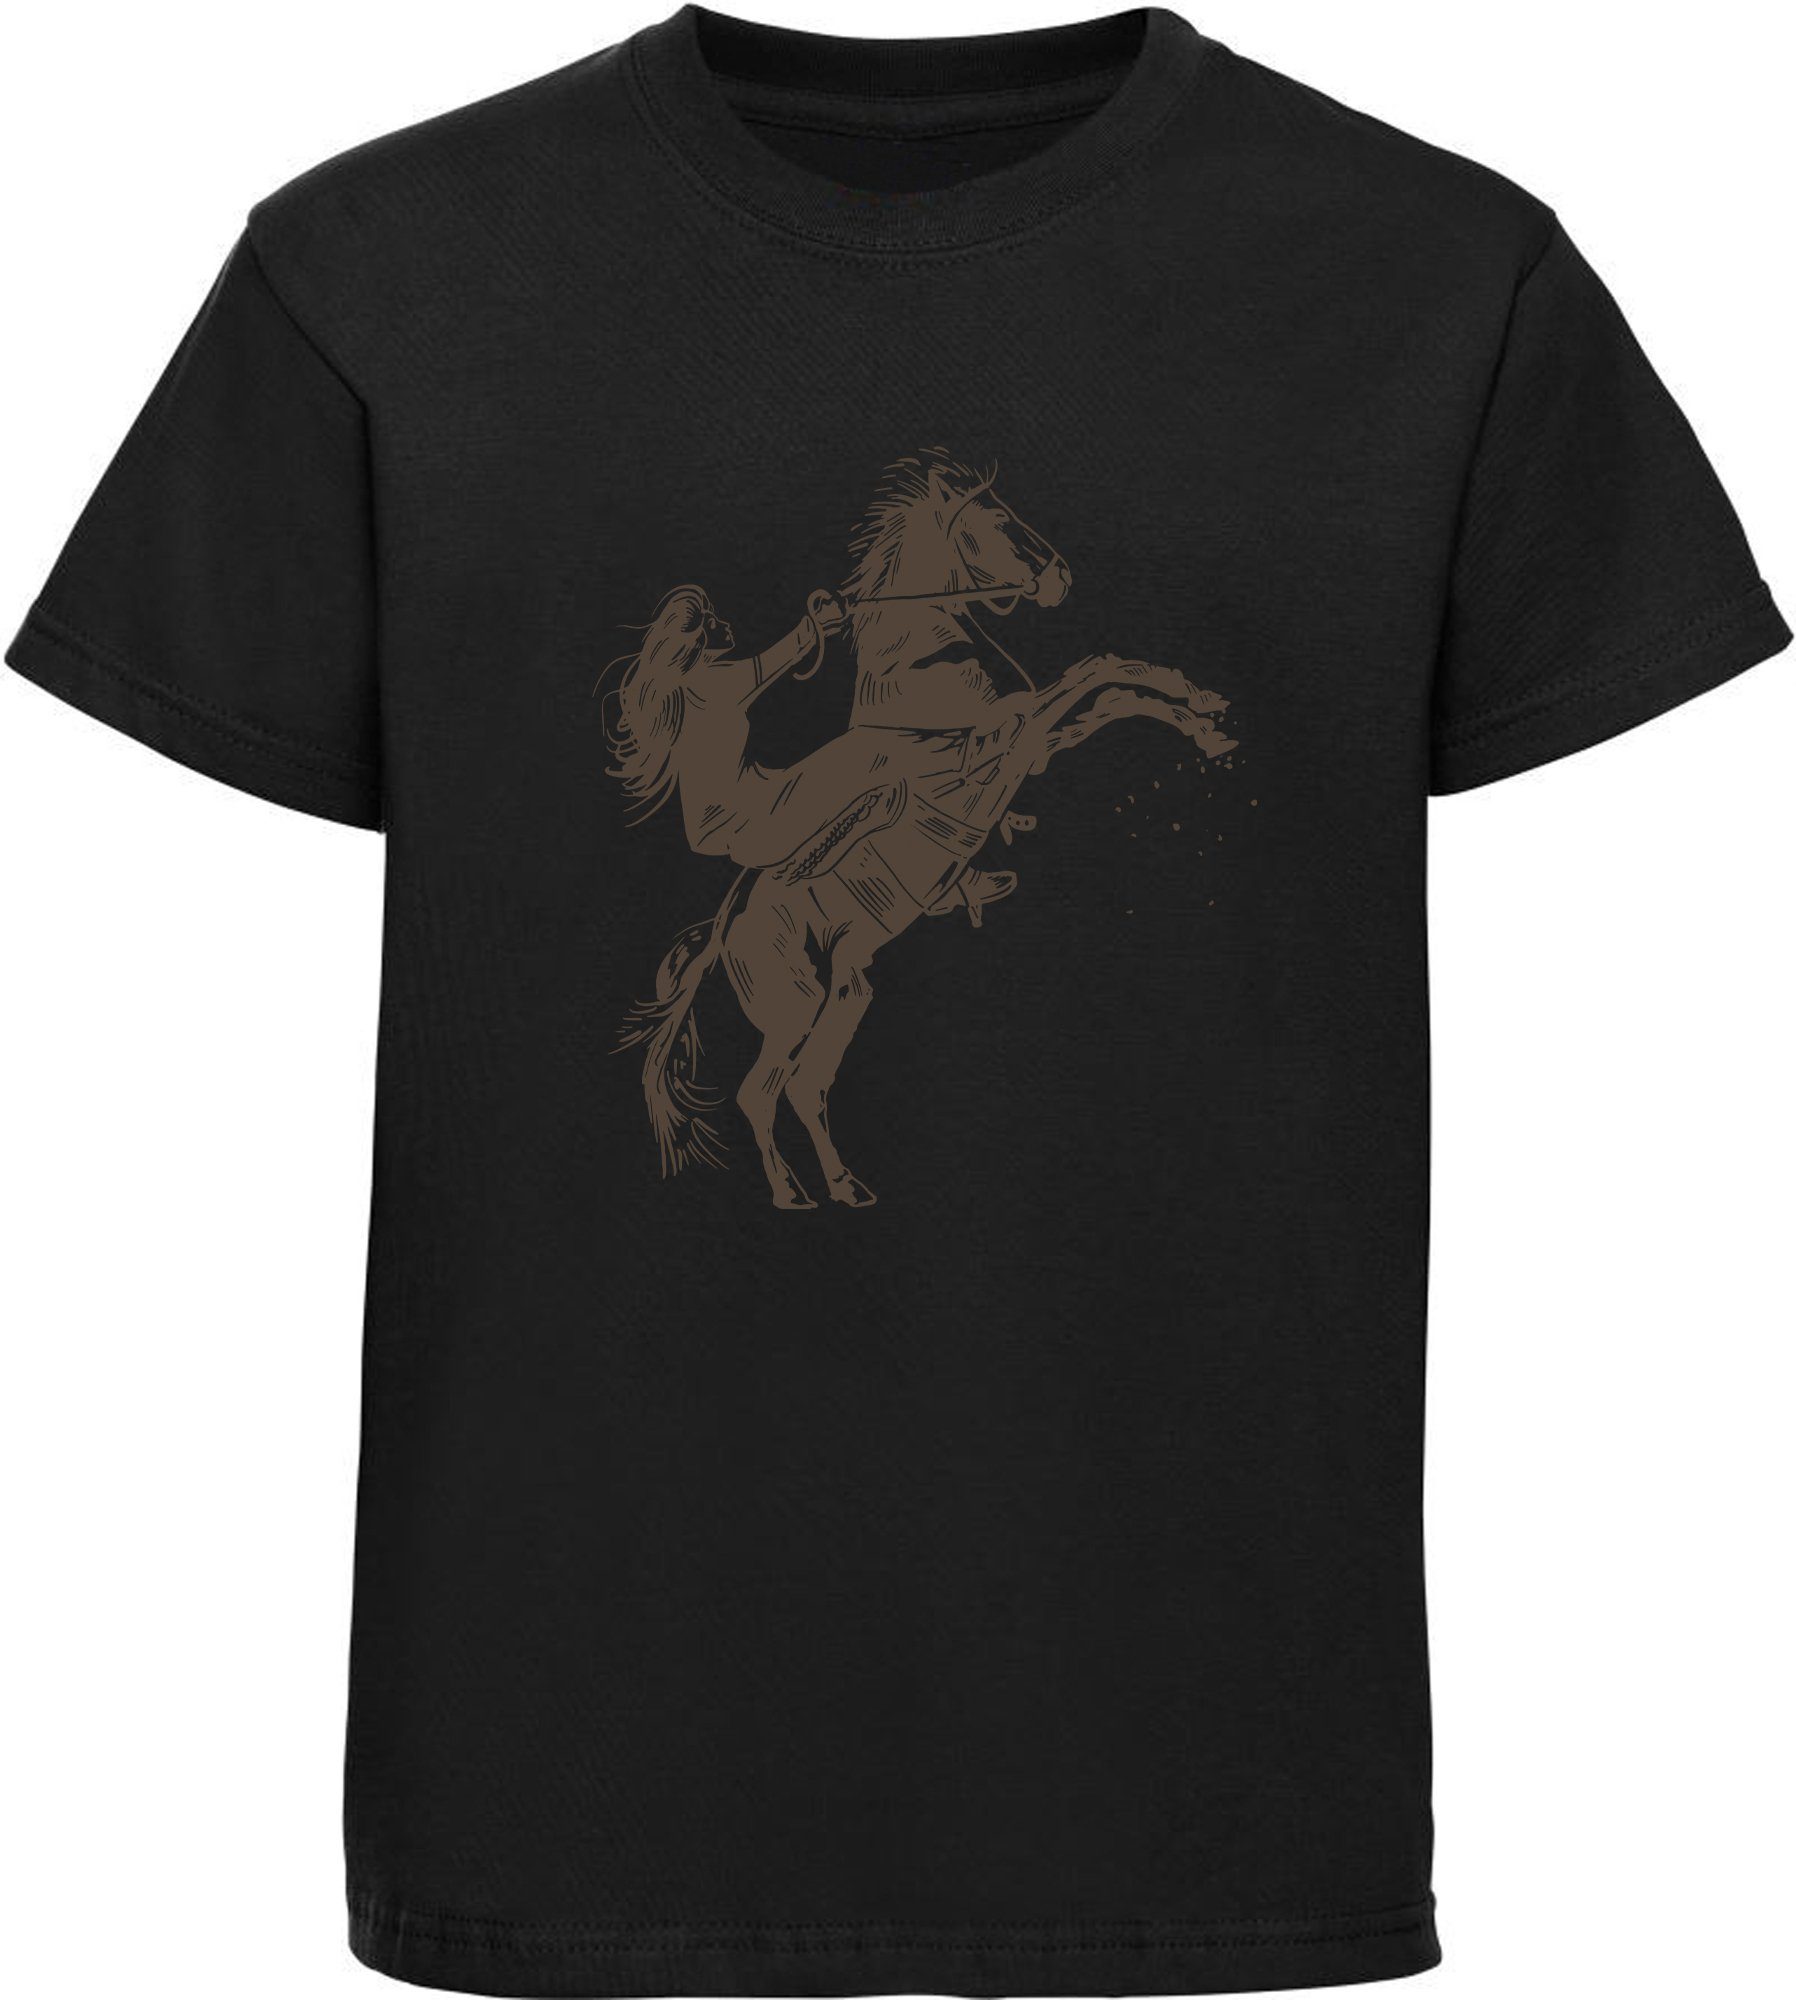 MyDesign24 T-Shirt Kinder Pferde Print Shirt bedruckt - Aufsteigendes Pferd mit Reiter Baumwollshirt mit Aufdruck, i252 schwarz